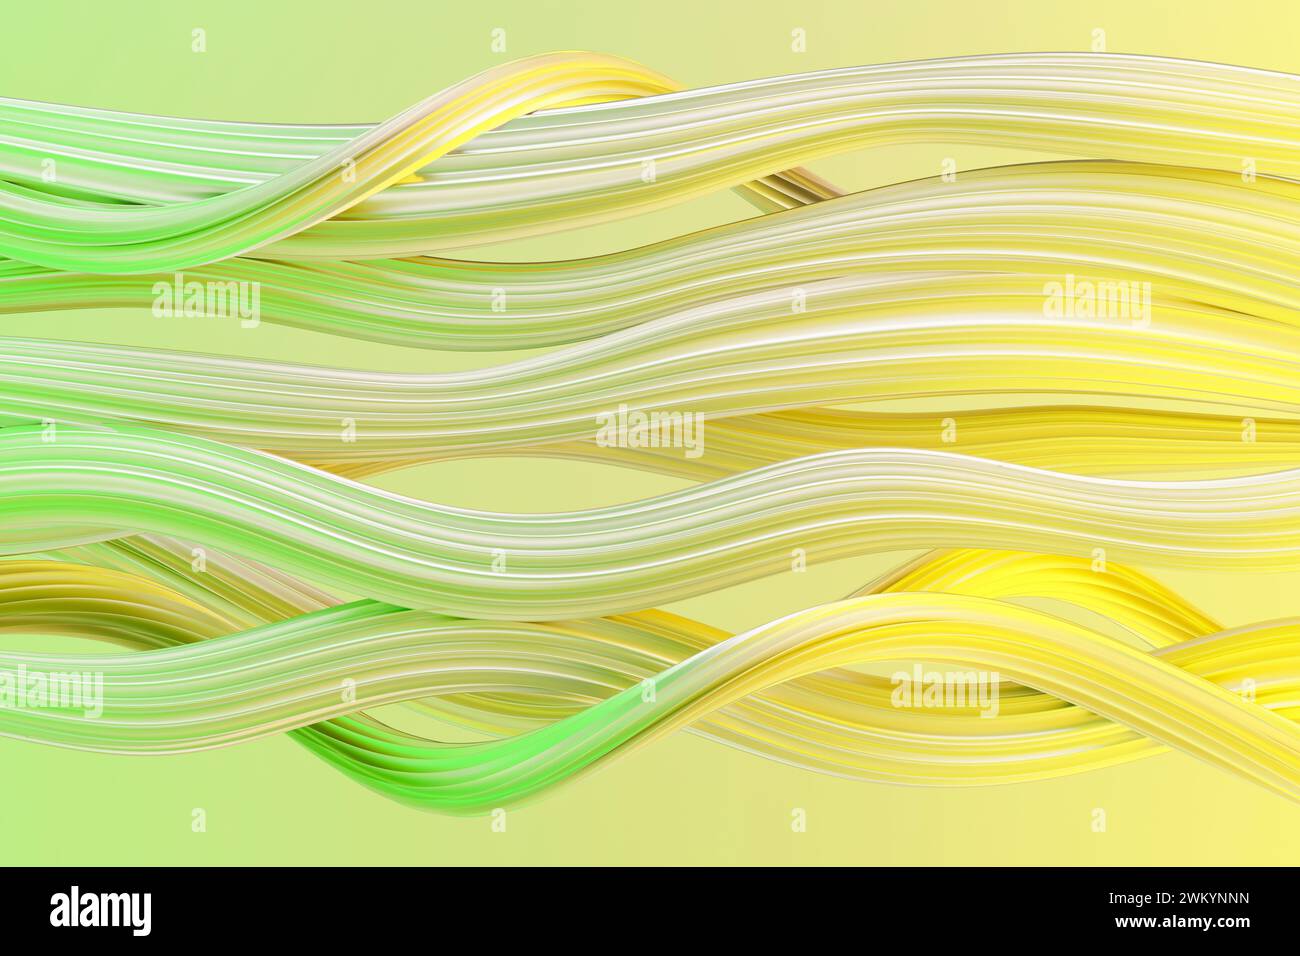 Fond jaune et vert abstrait avec des lignes ondulées fluides créant un motif dynamique. rendu 3d. Banque D'Images